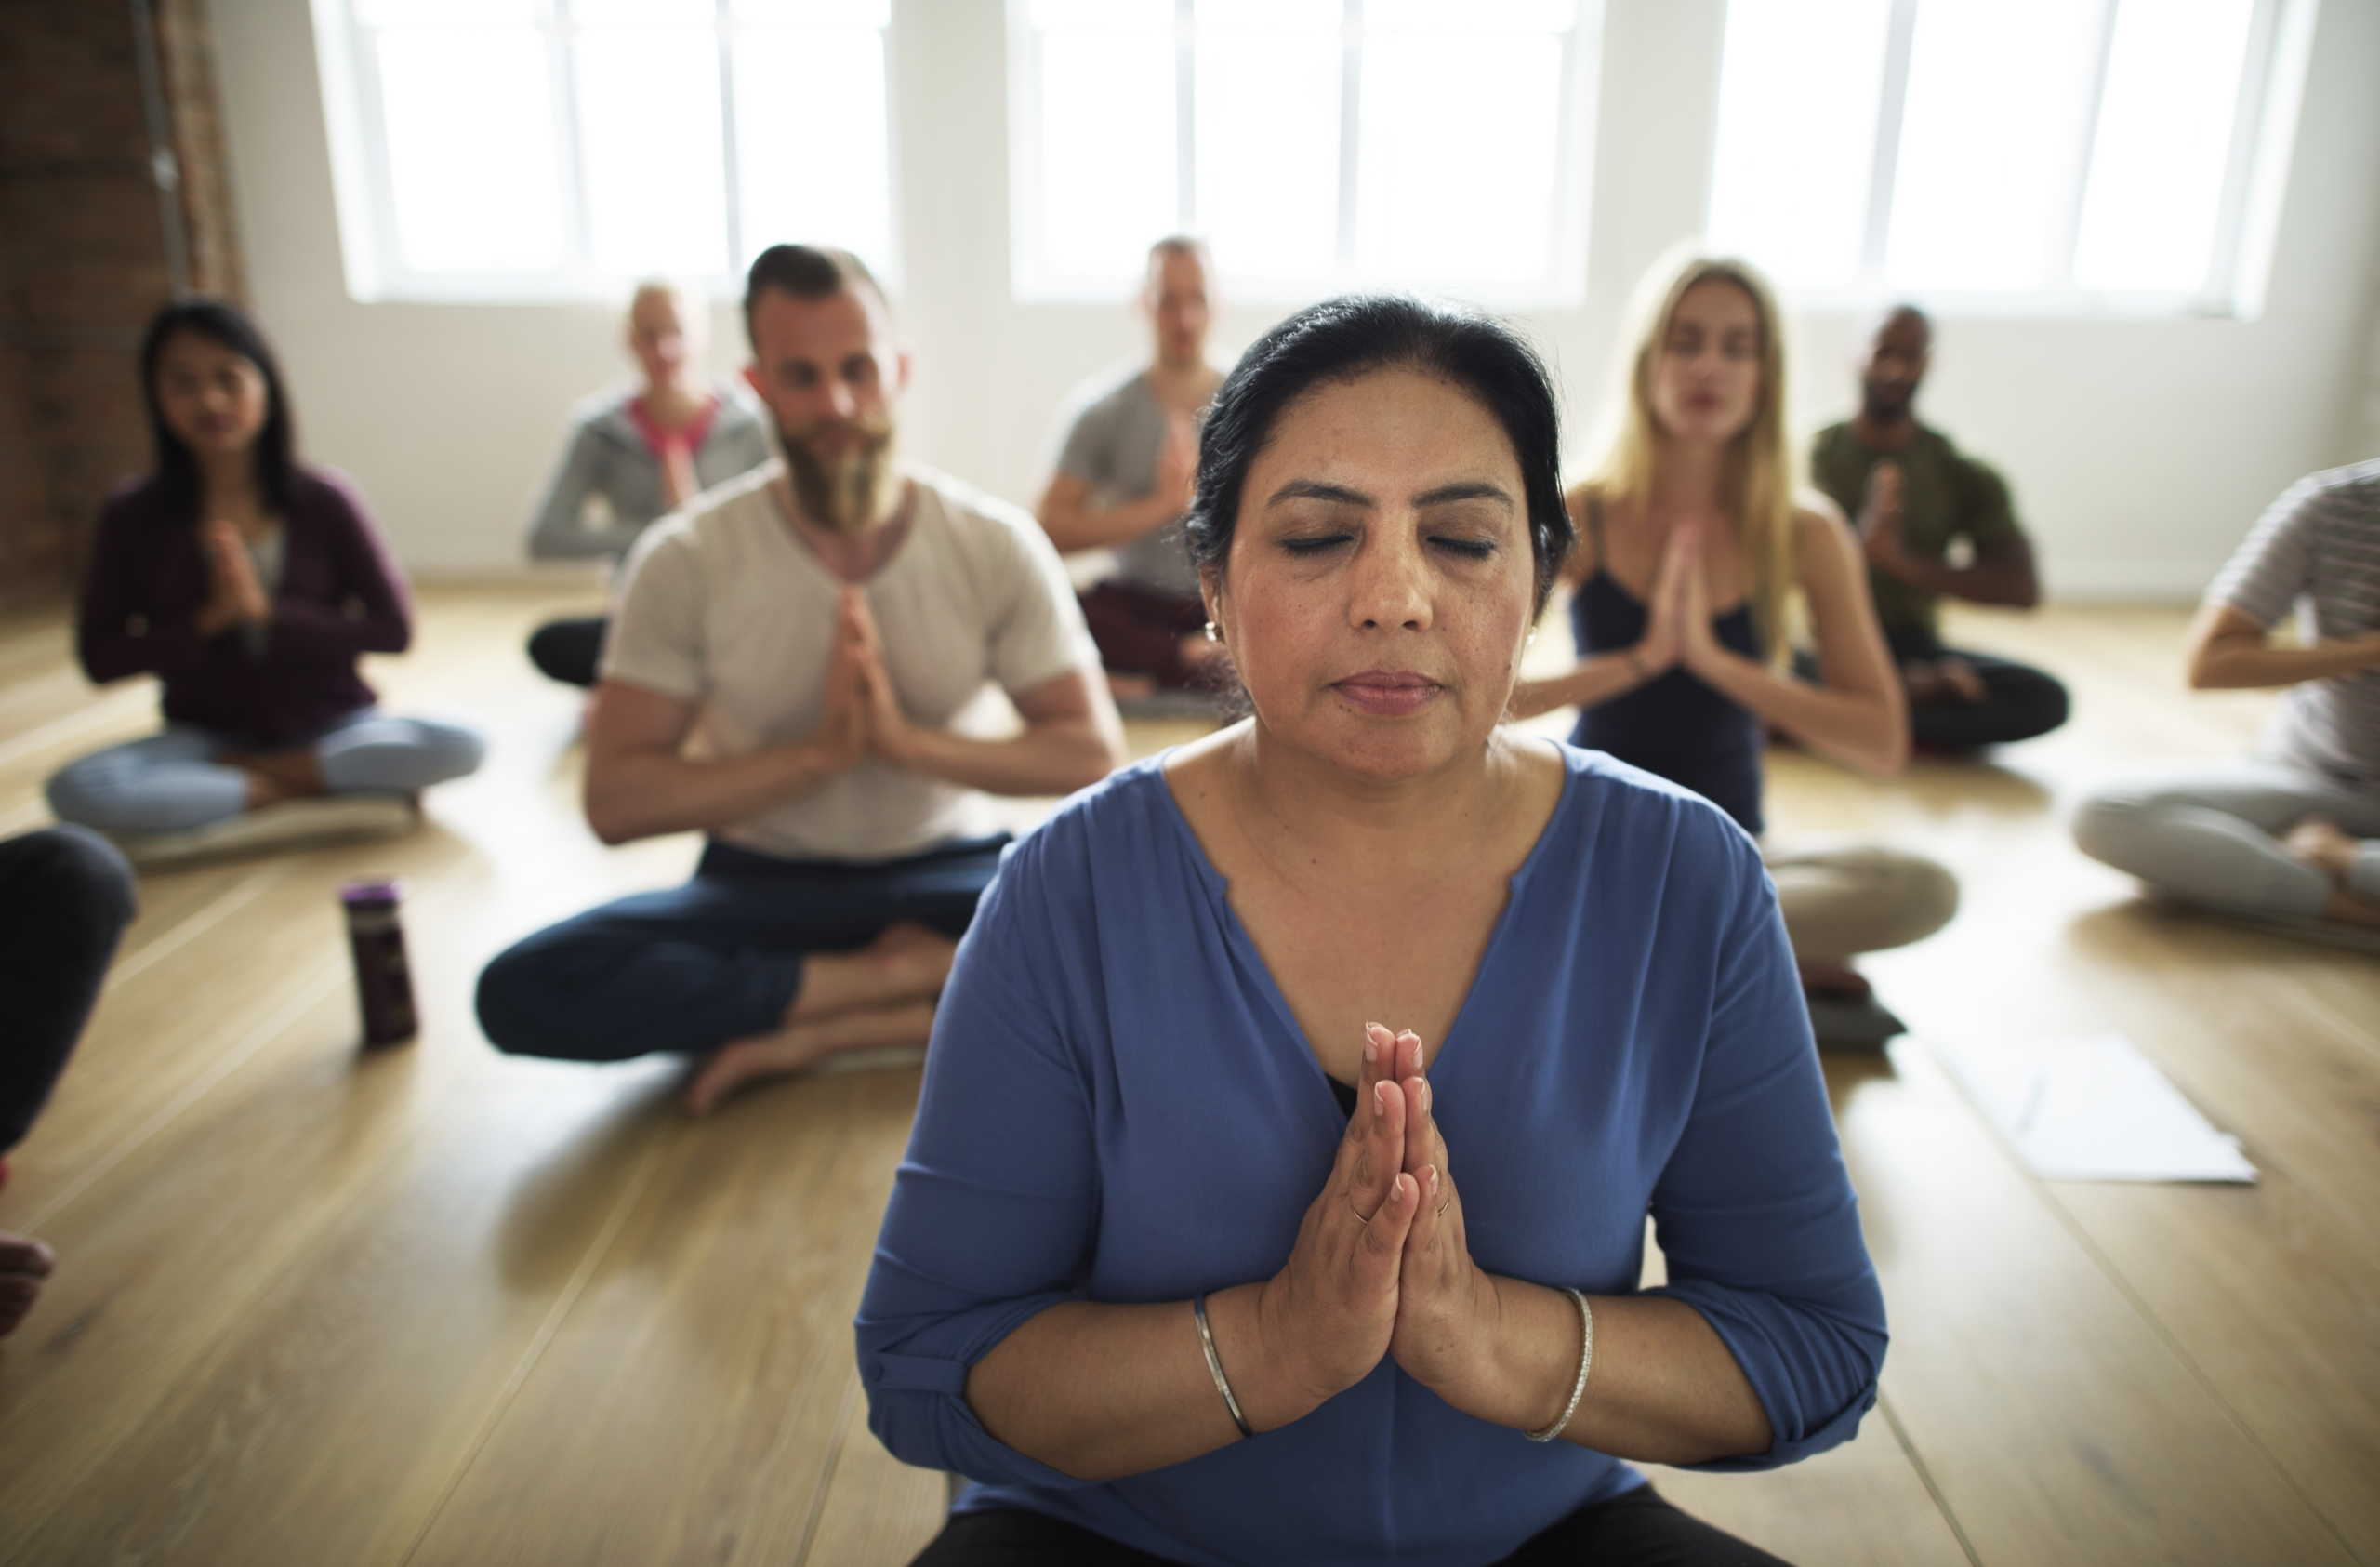 Meditation, Sunrise yoga, prayer hands